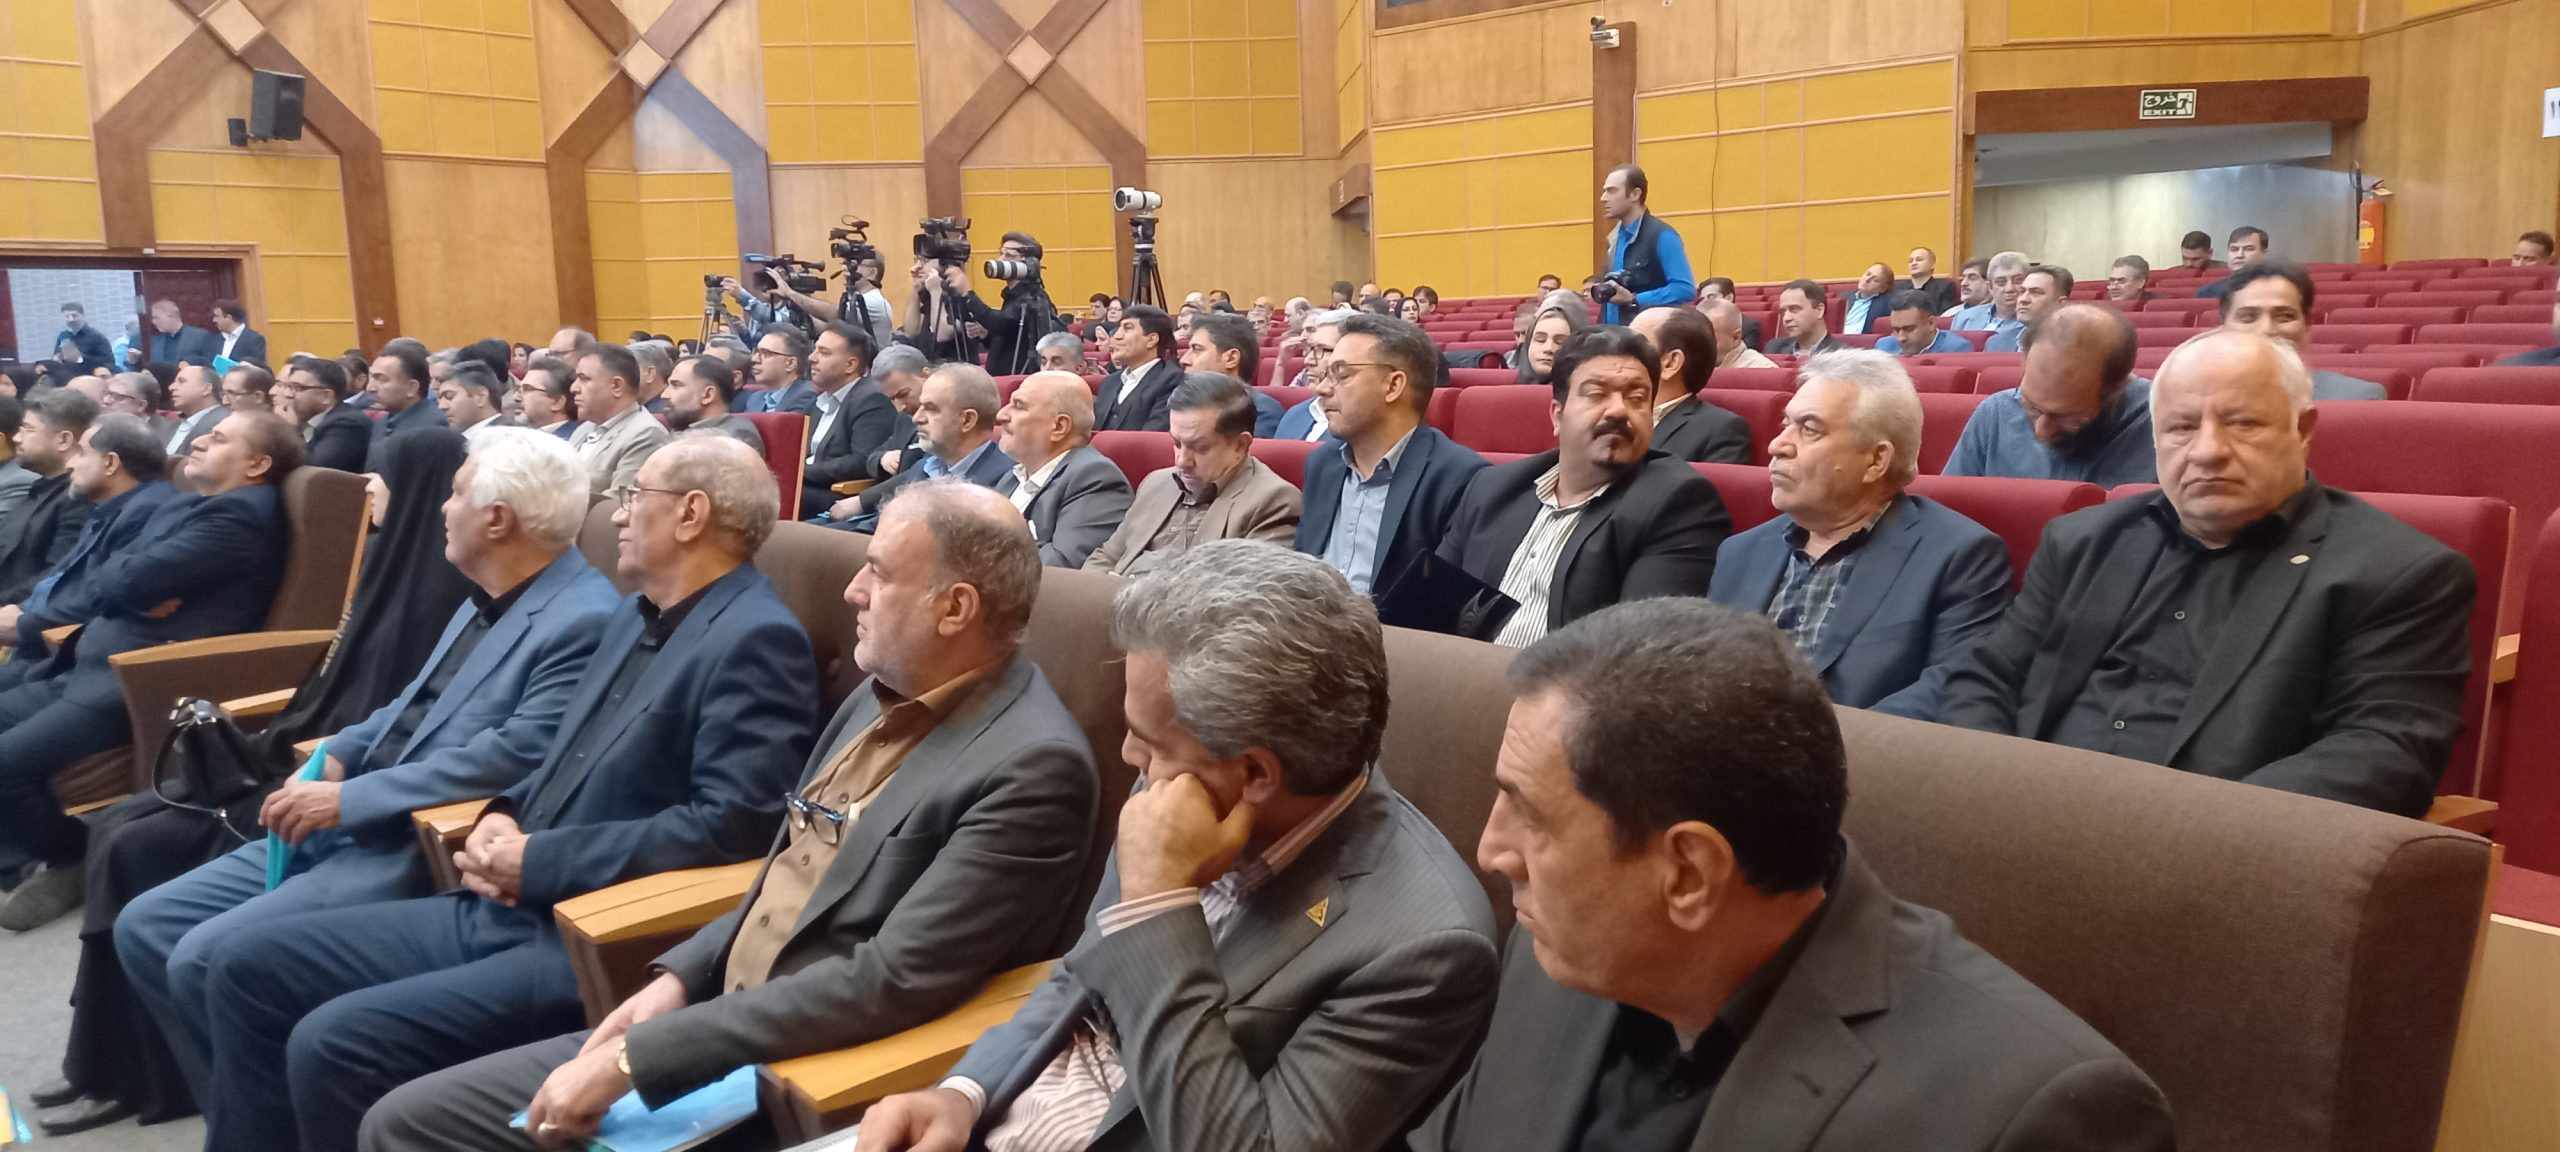 جزئیات هشتمین همایش ملی کار/ لایحه امنیت شغلی کارگران یادگار رئیس جمهور شهید است/مجلس تایید کند